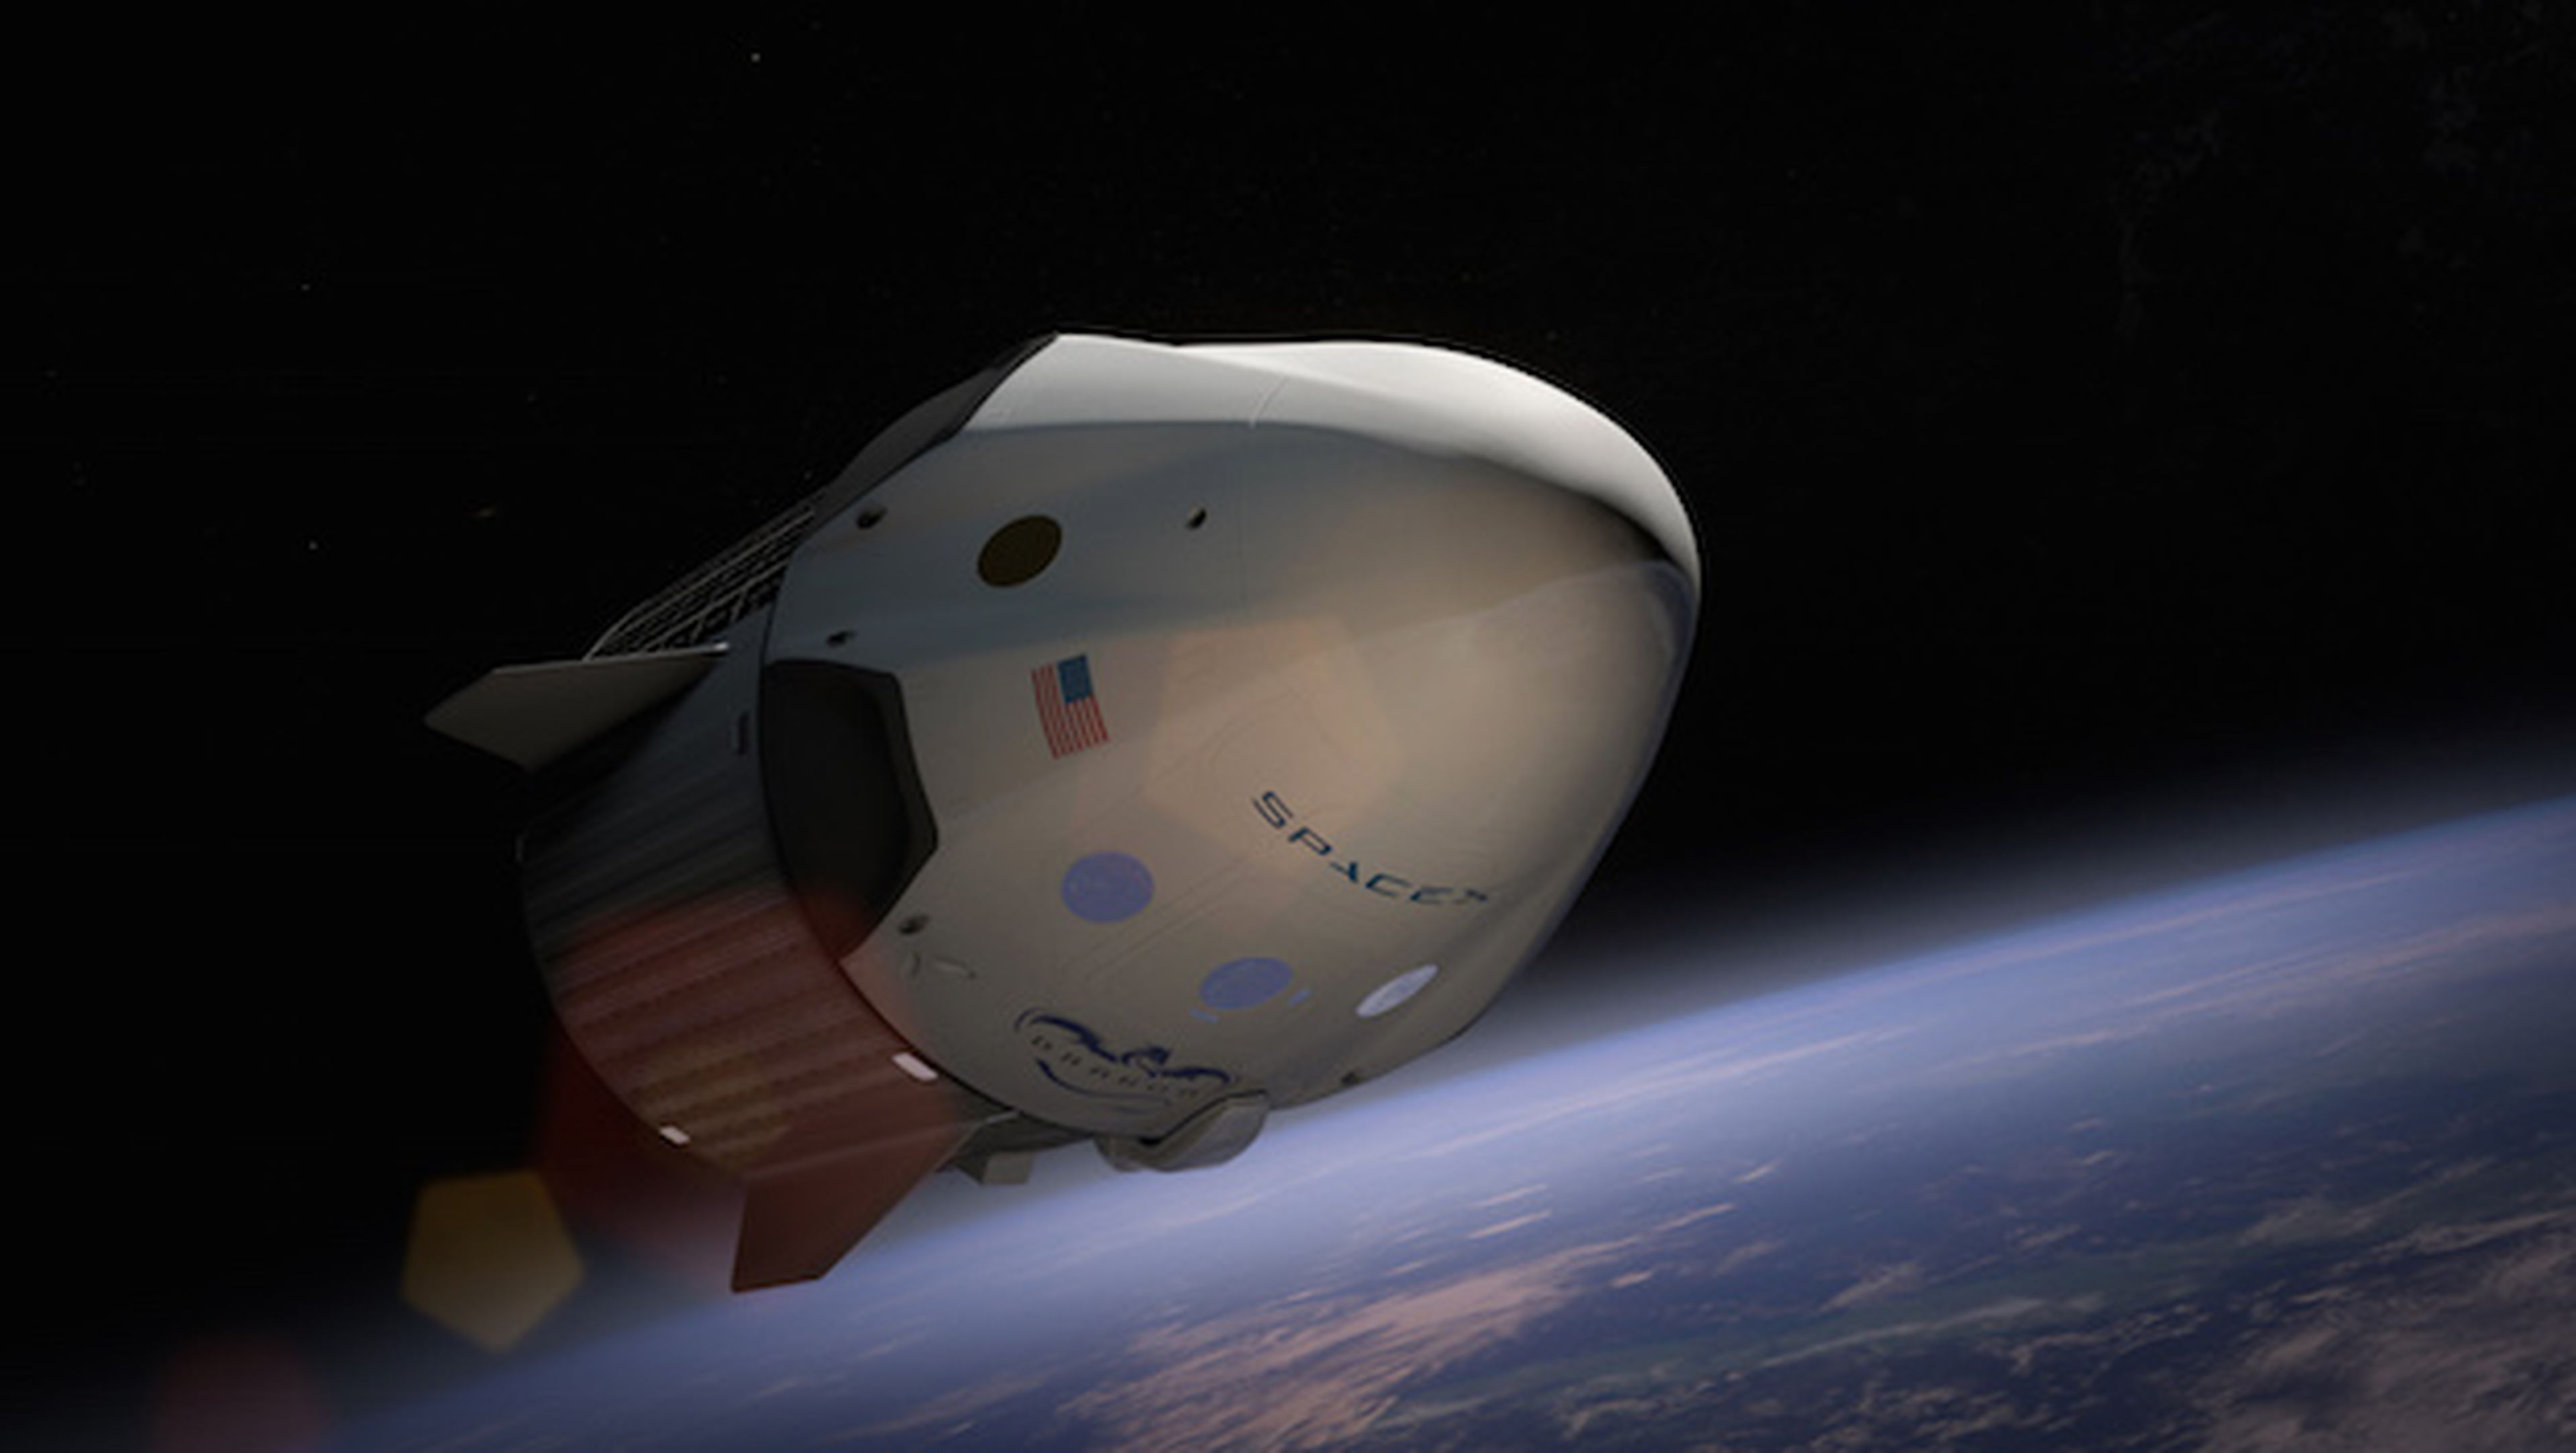 Confirmado: Google invierte en SpaceX